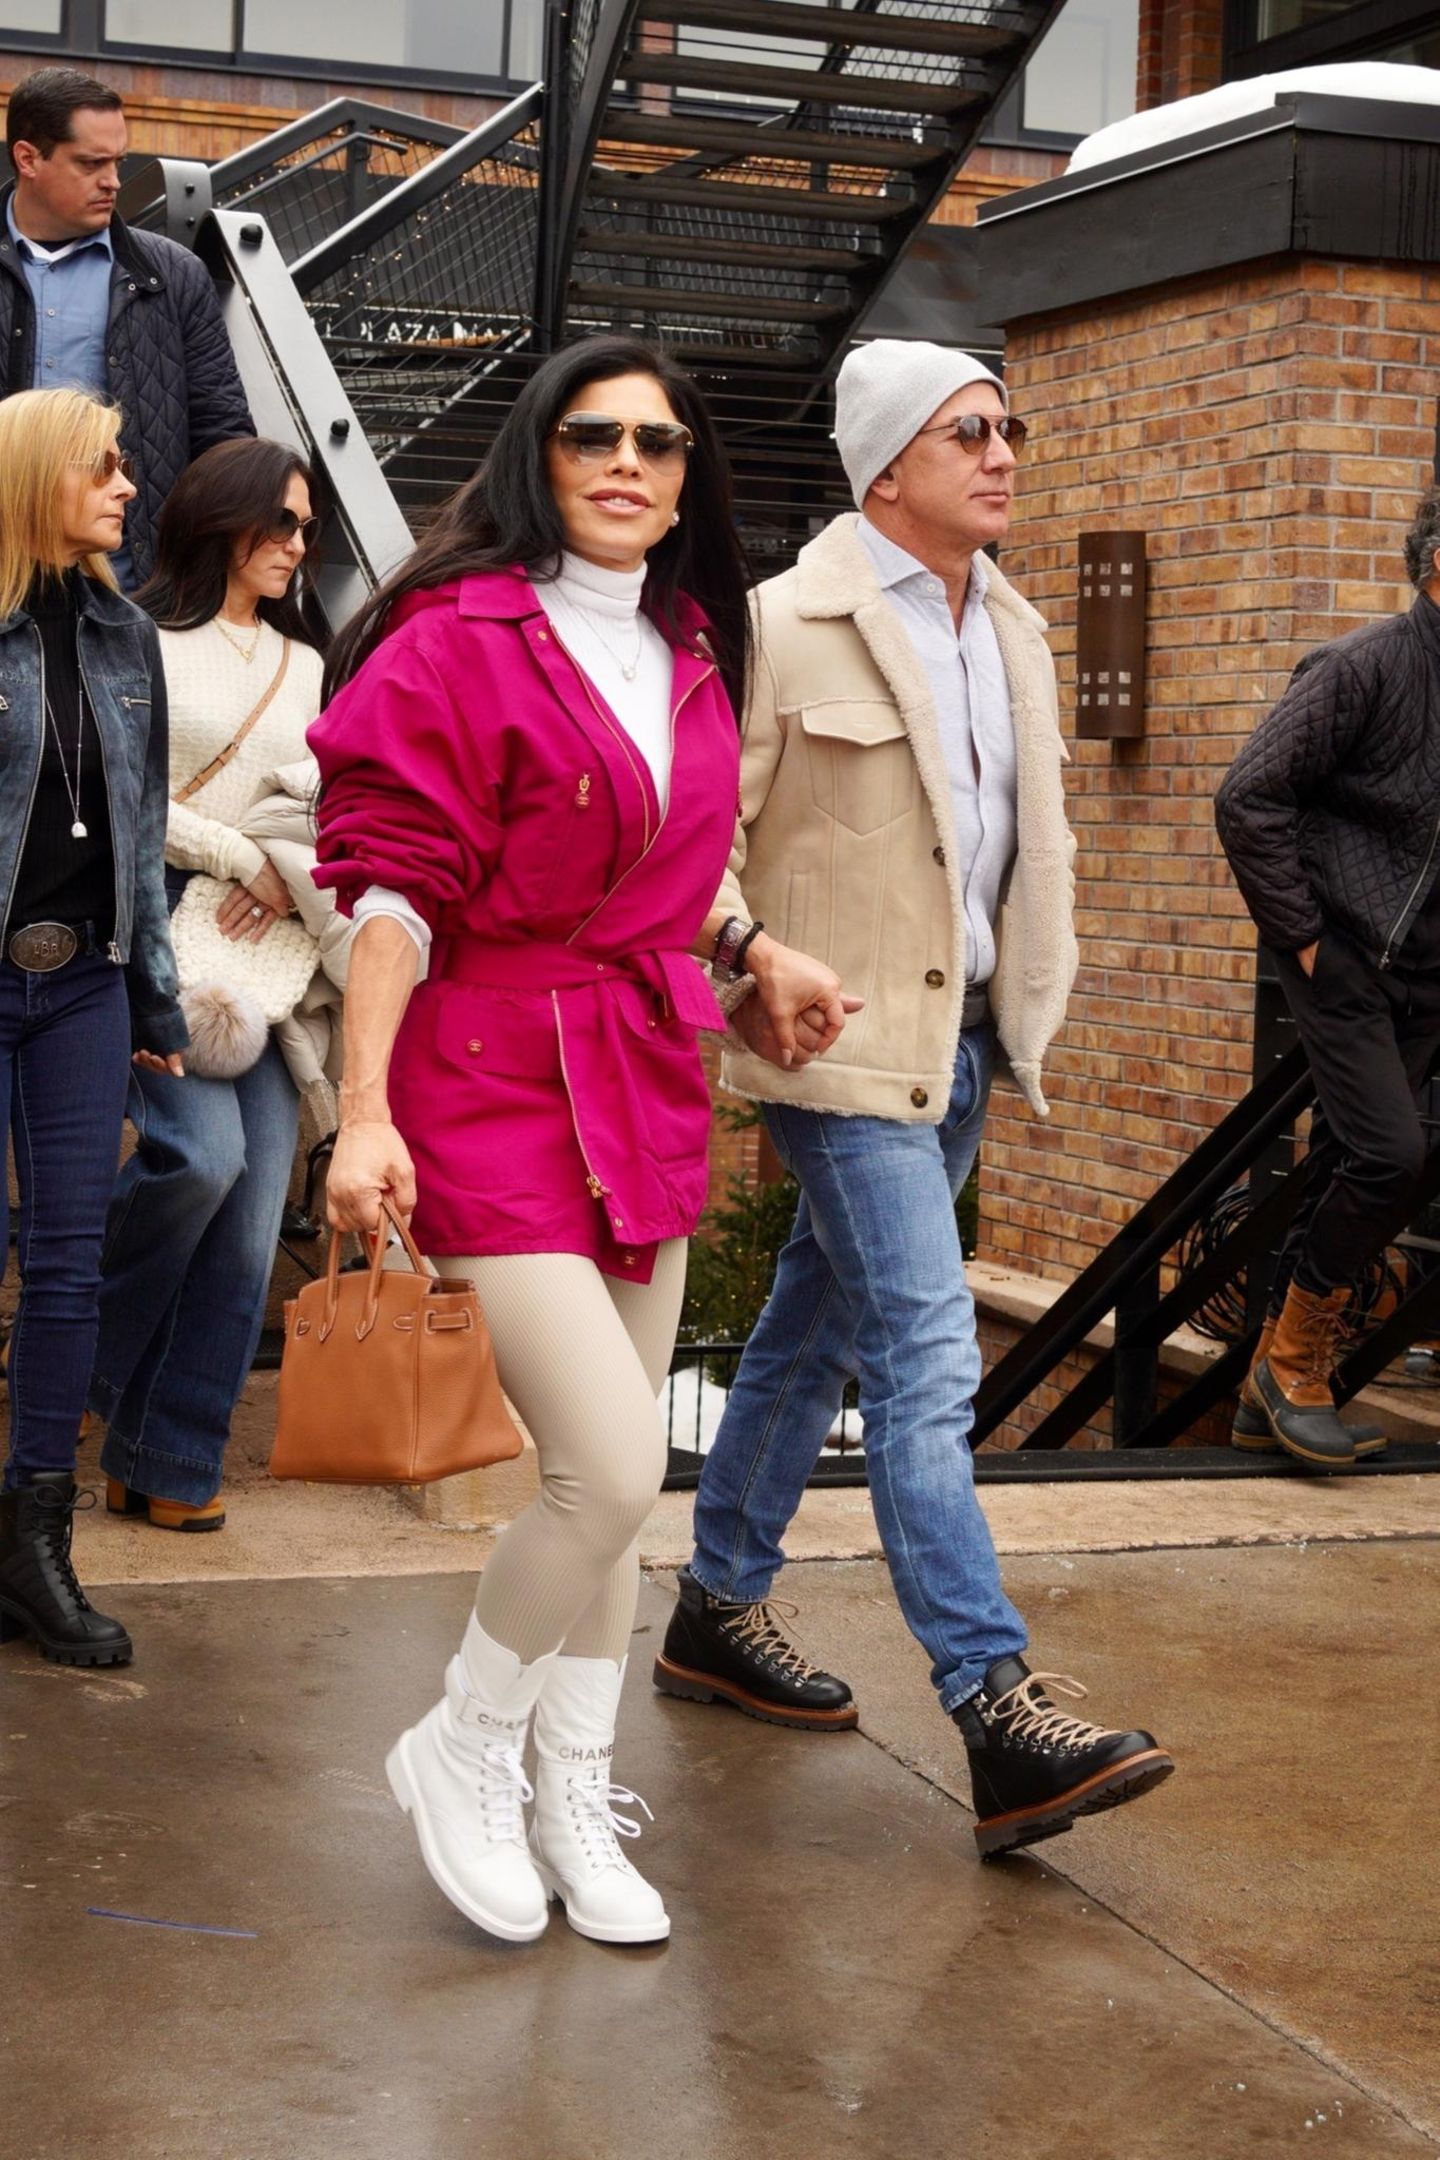 Händchenhaltend spazieren Jeff Bezos und seine Freundin Lauren Sanchez für einen Einkaufsbummel durch Aspen, Colorado. In cremefarbener Jacke, Jeans und mit schlichter Strickmütze sieht der Amazon-Milliardär stylisch, aber dennoch bodenständig aus. Neben ihm setzt Lauren Sanchez auf einen Farbakzent: Zu ihren weißen Chanel-Schnürschuhen ist die pinkfarbene Jacke mit Taillenbindung definitiv ein Hingucker. 